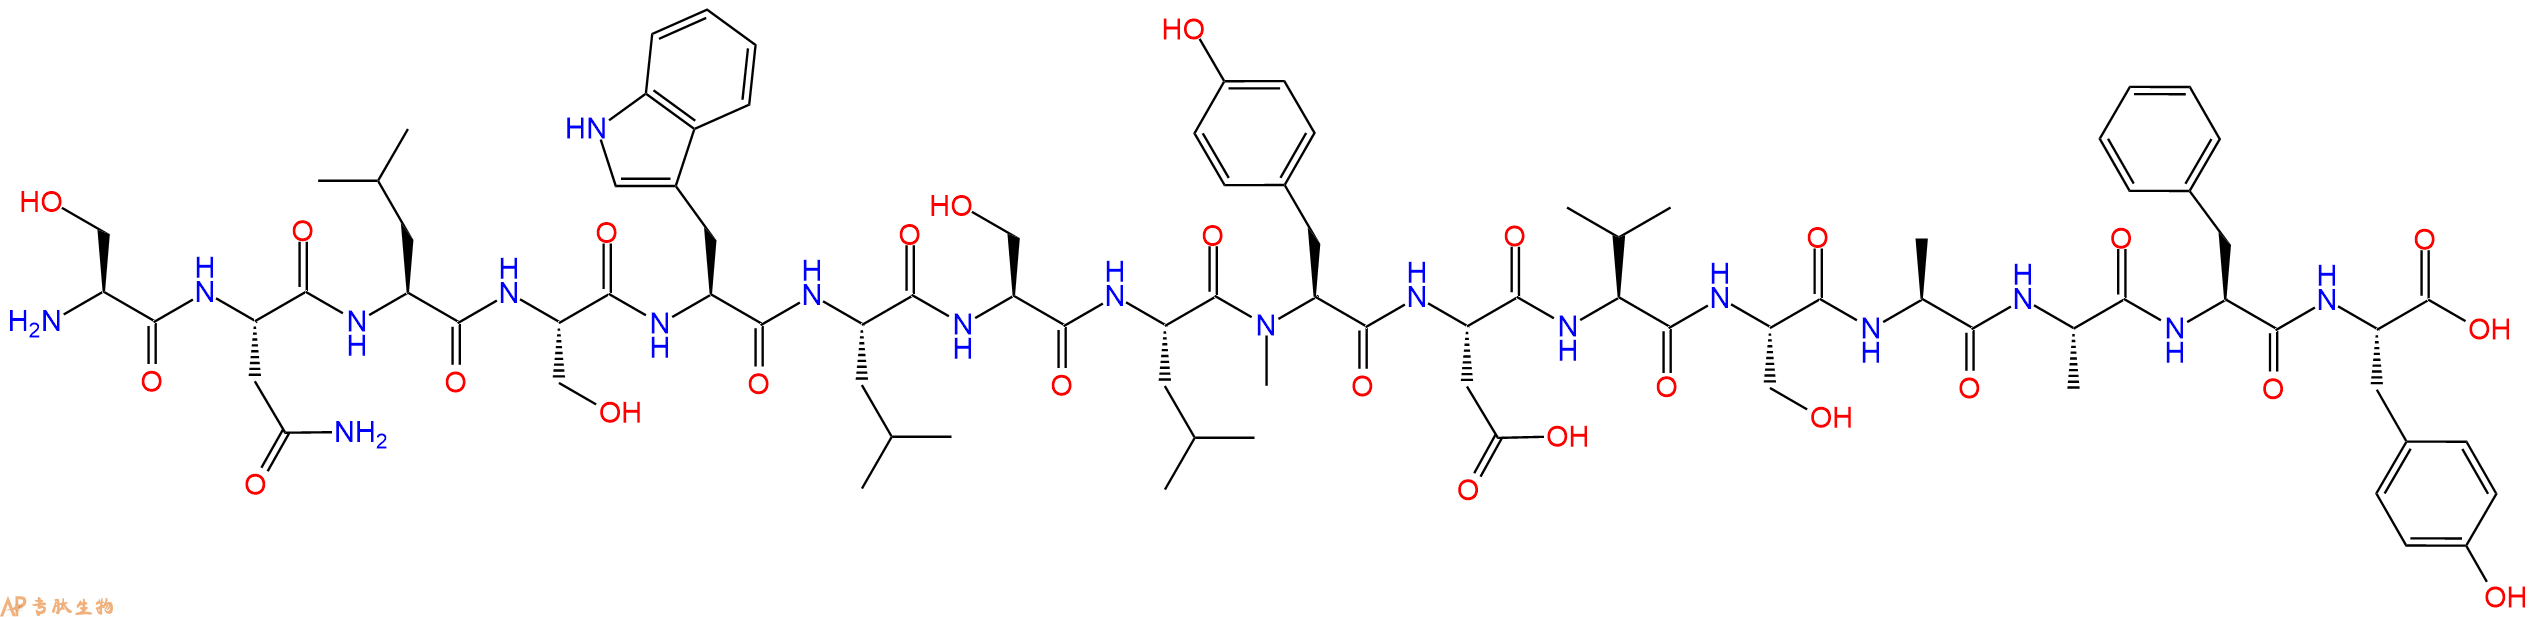 专肽生物产品H2N-Ser-Asn-Leu-Ser-Trp-Leu-Ser-Leu-(NMe)Tyr-Asp-V